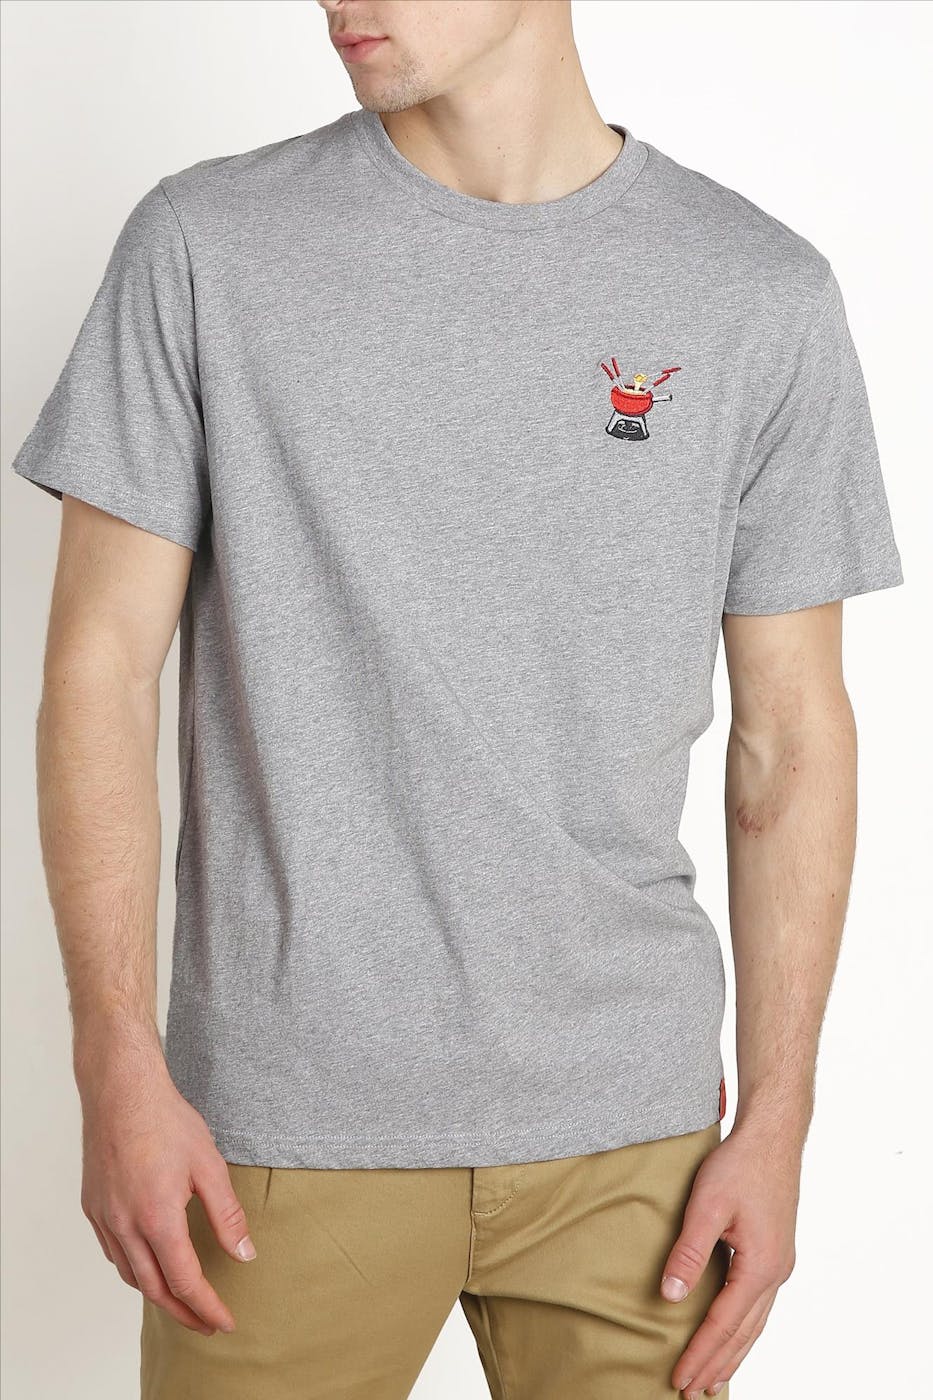 Antwrp - Grijze Kaasfondue T-shirt